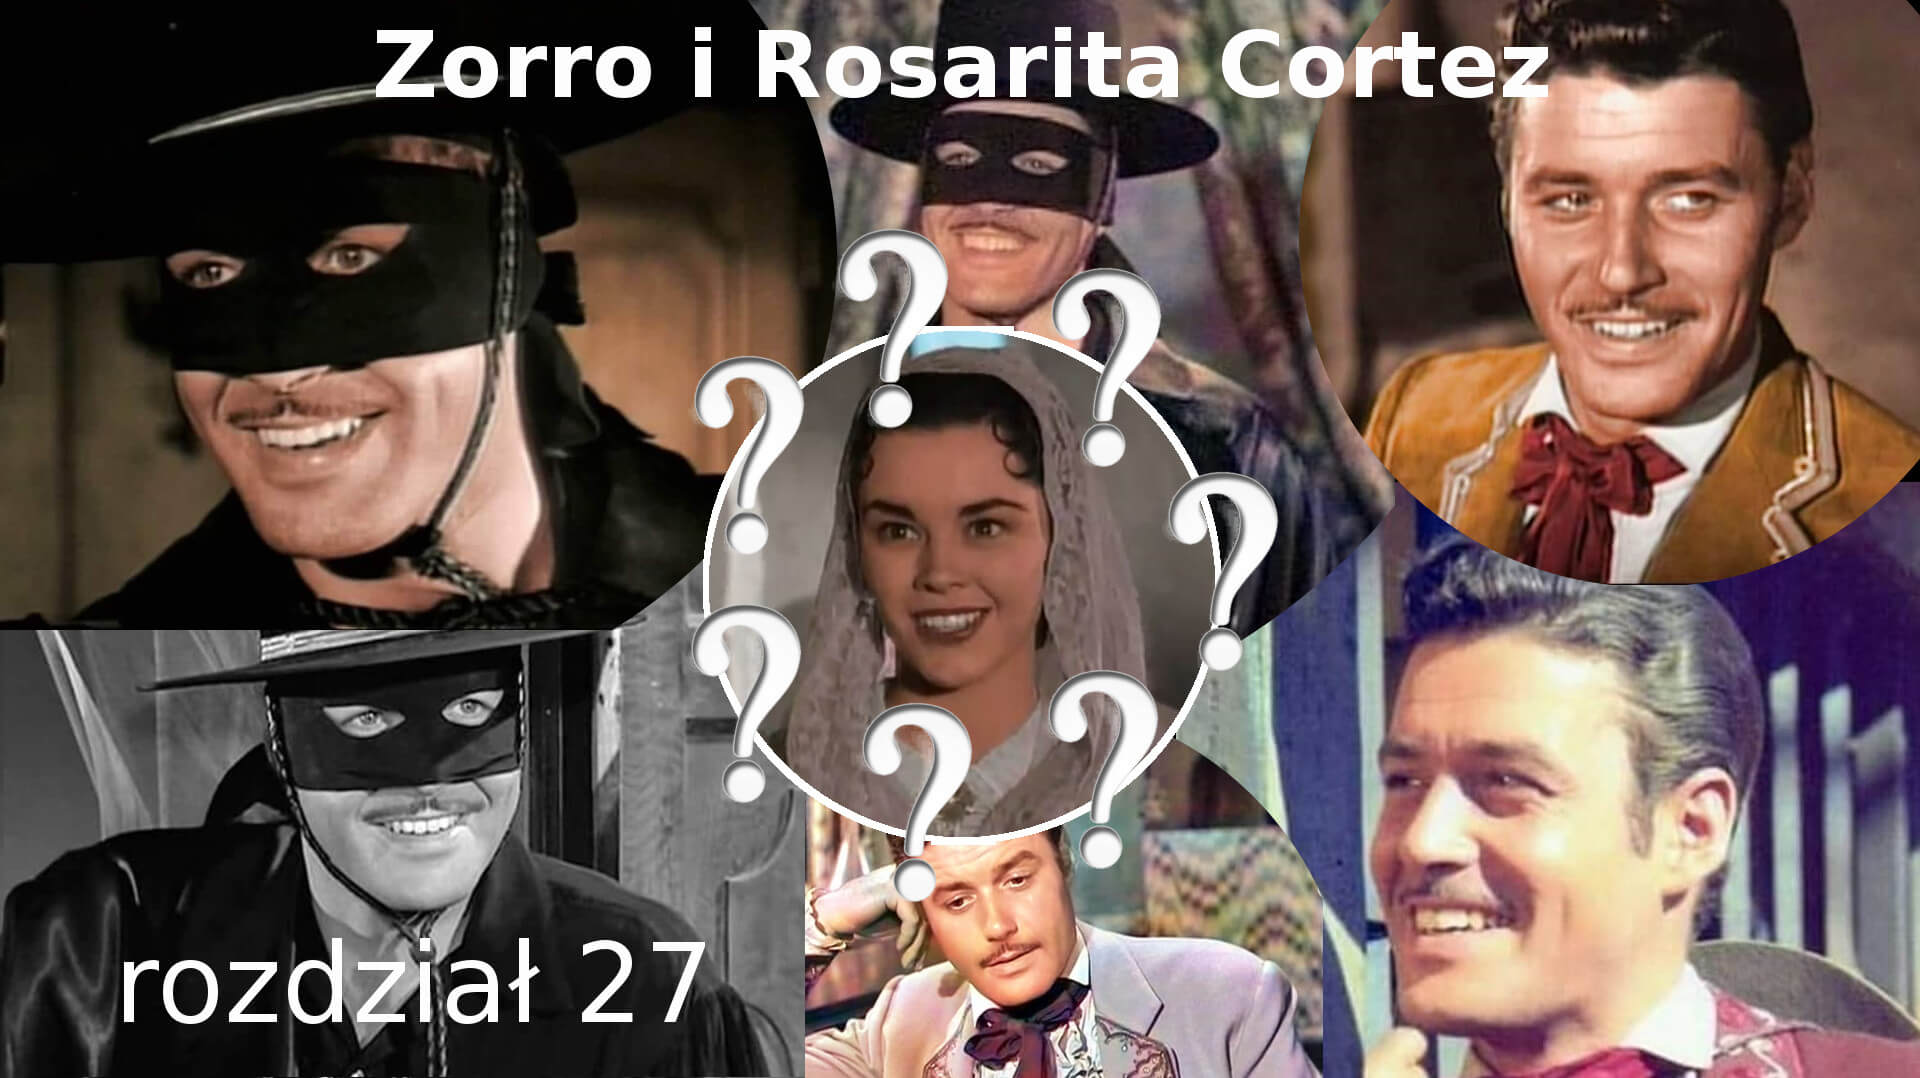 Zorro i Rosarita Cortez rozdział 27 Zorro fanfiction